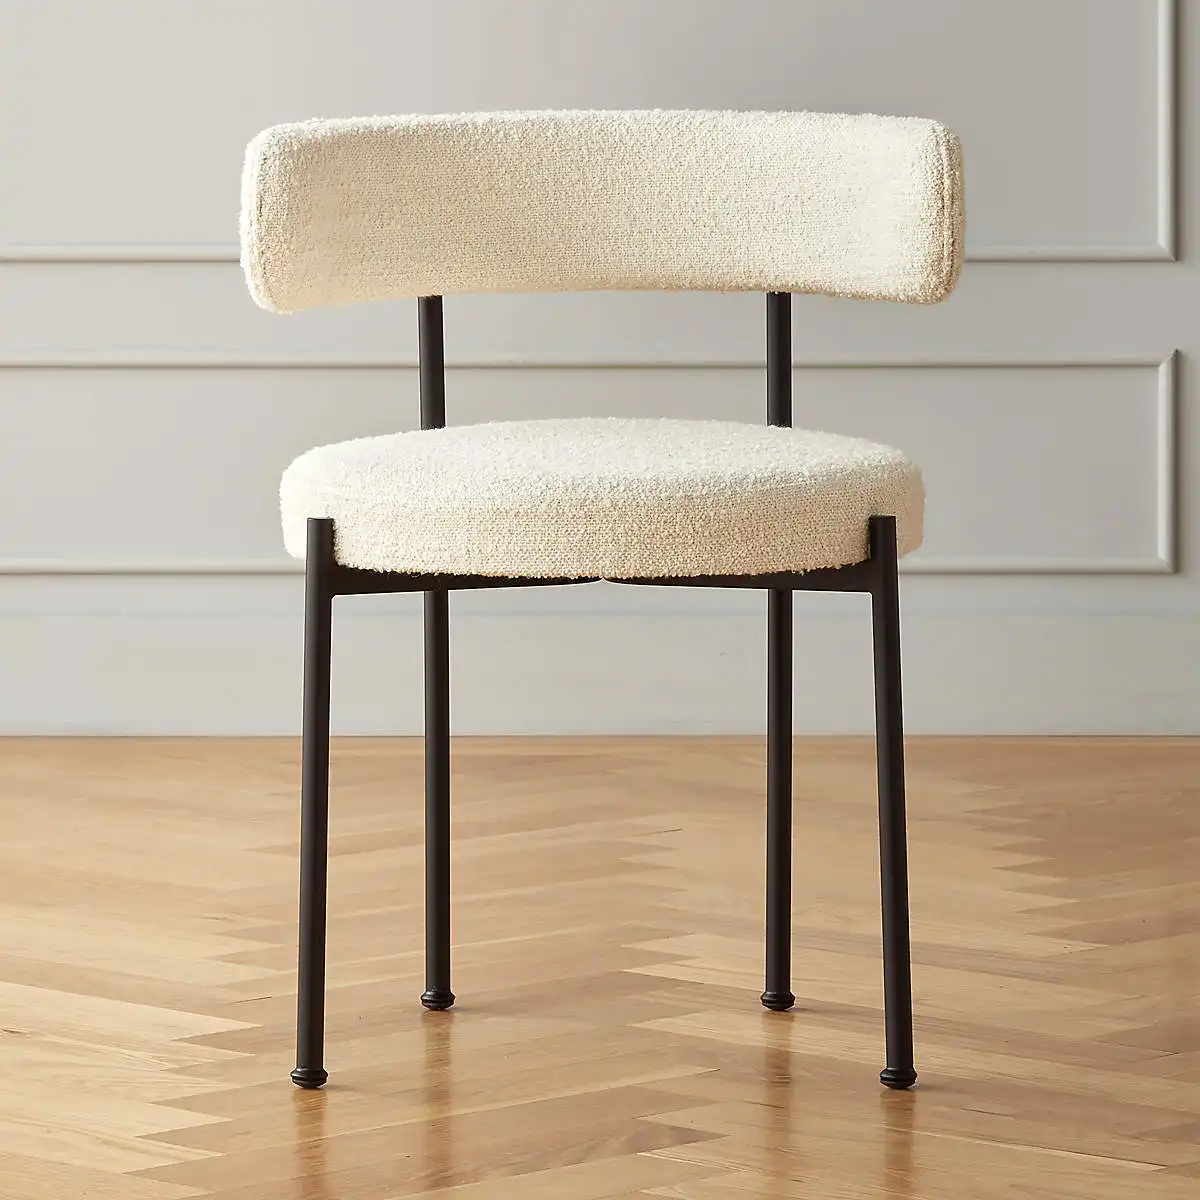 Nuovo stile mobili per sala da pranzo sedie da pranzo sedia da pranzo moderna di lusso bianca nordica boucle con gambe in ferro metallico